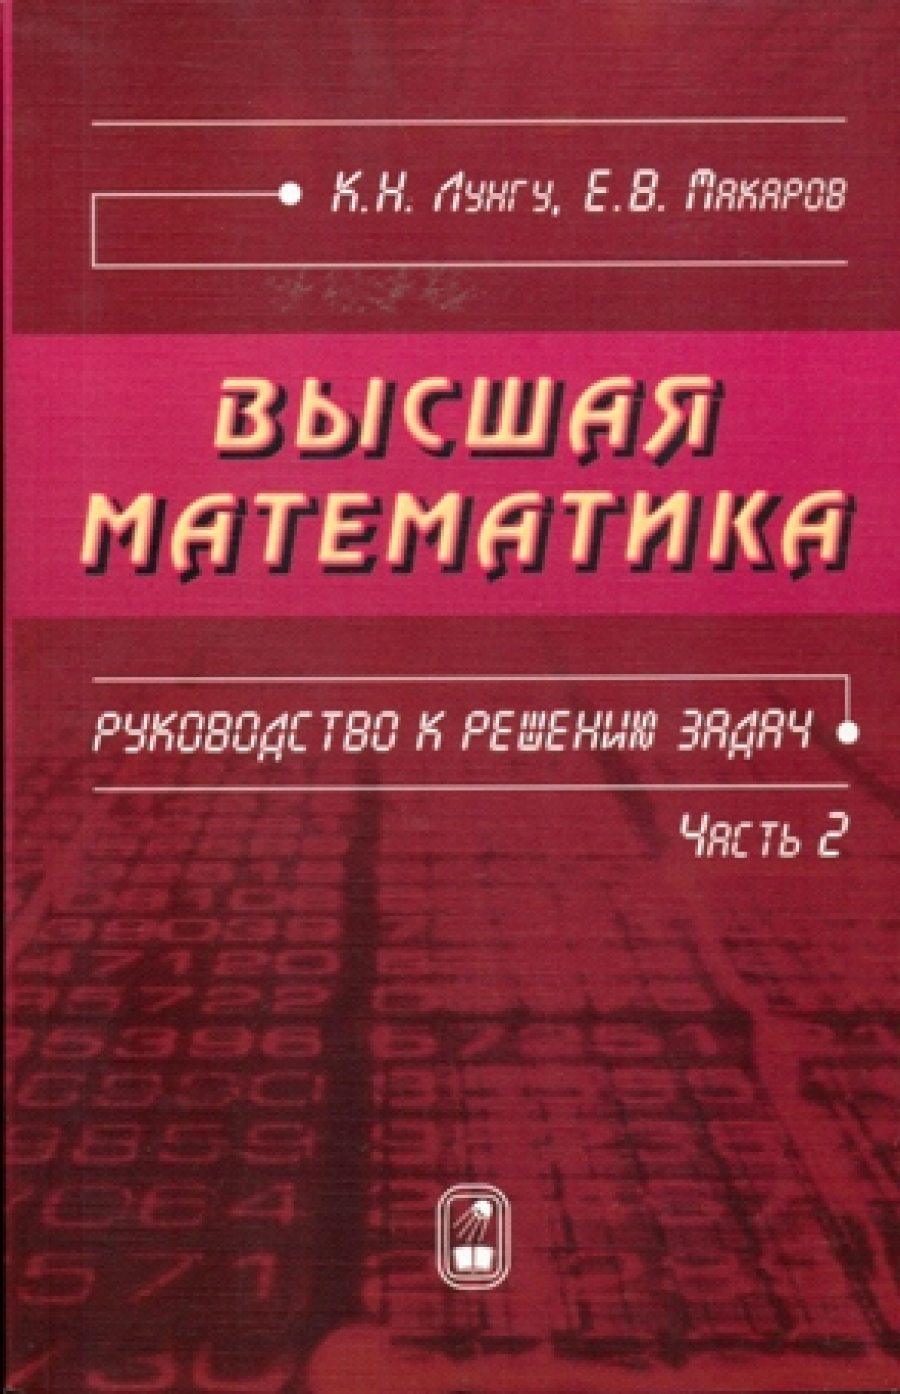 Лунгу К.Н., Макаров Е.В. Высшая математика 